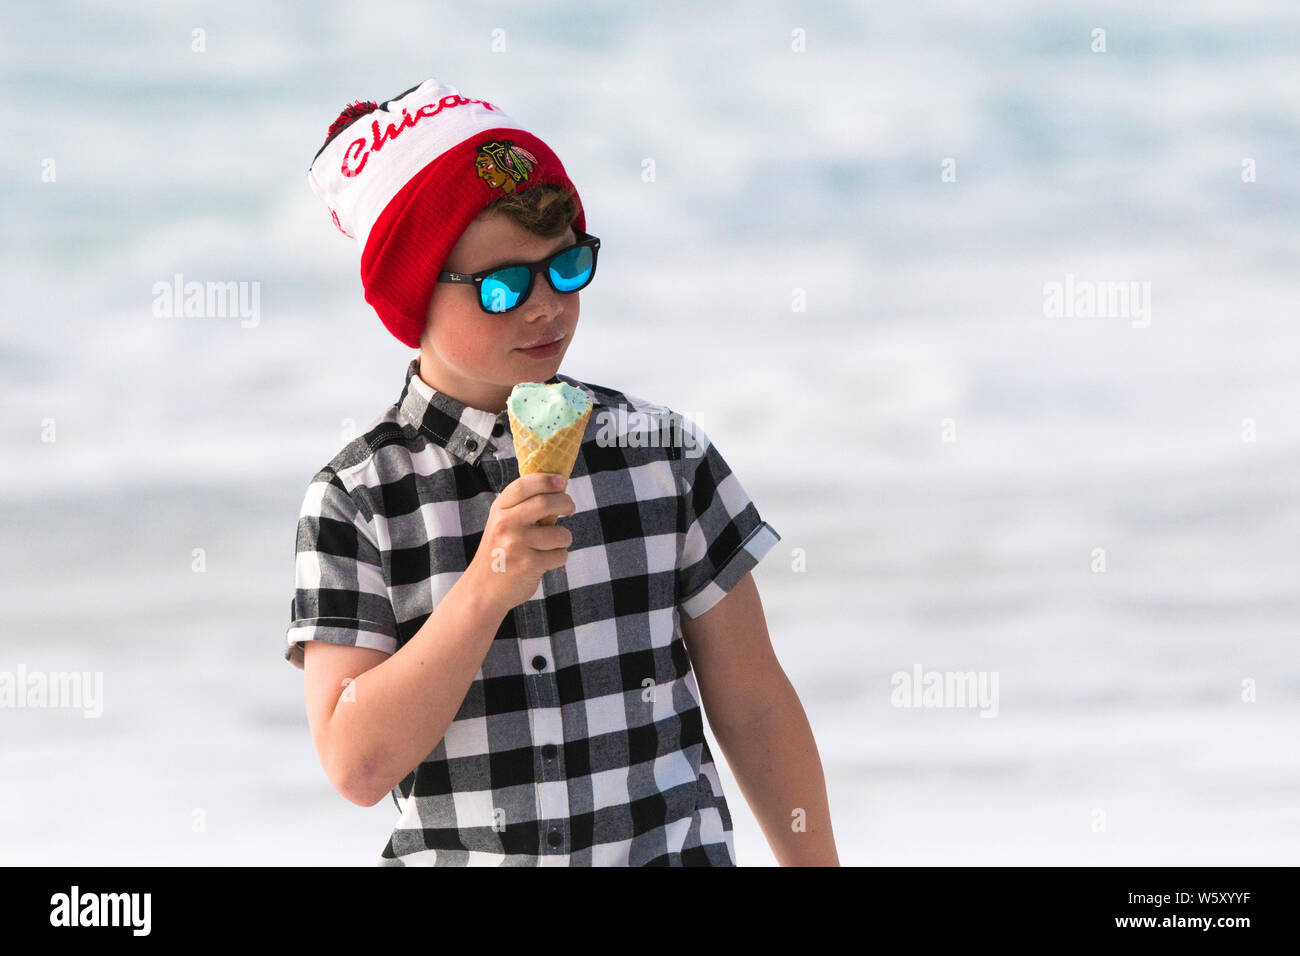 Ein Junge das Tragen von reflektierenden Sonnenbrille, T-Shirt und ein Chicago Blackhawks bobble Hut essen ein Eis. Stockfoto